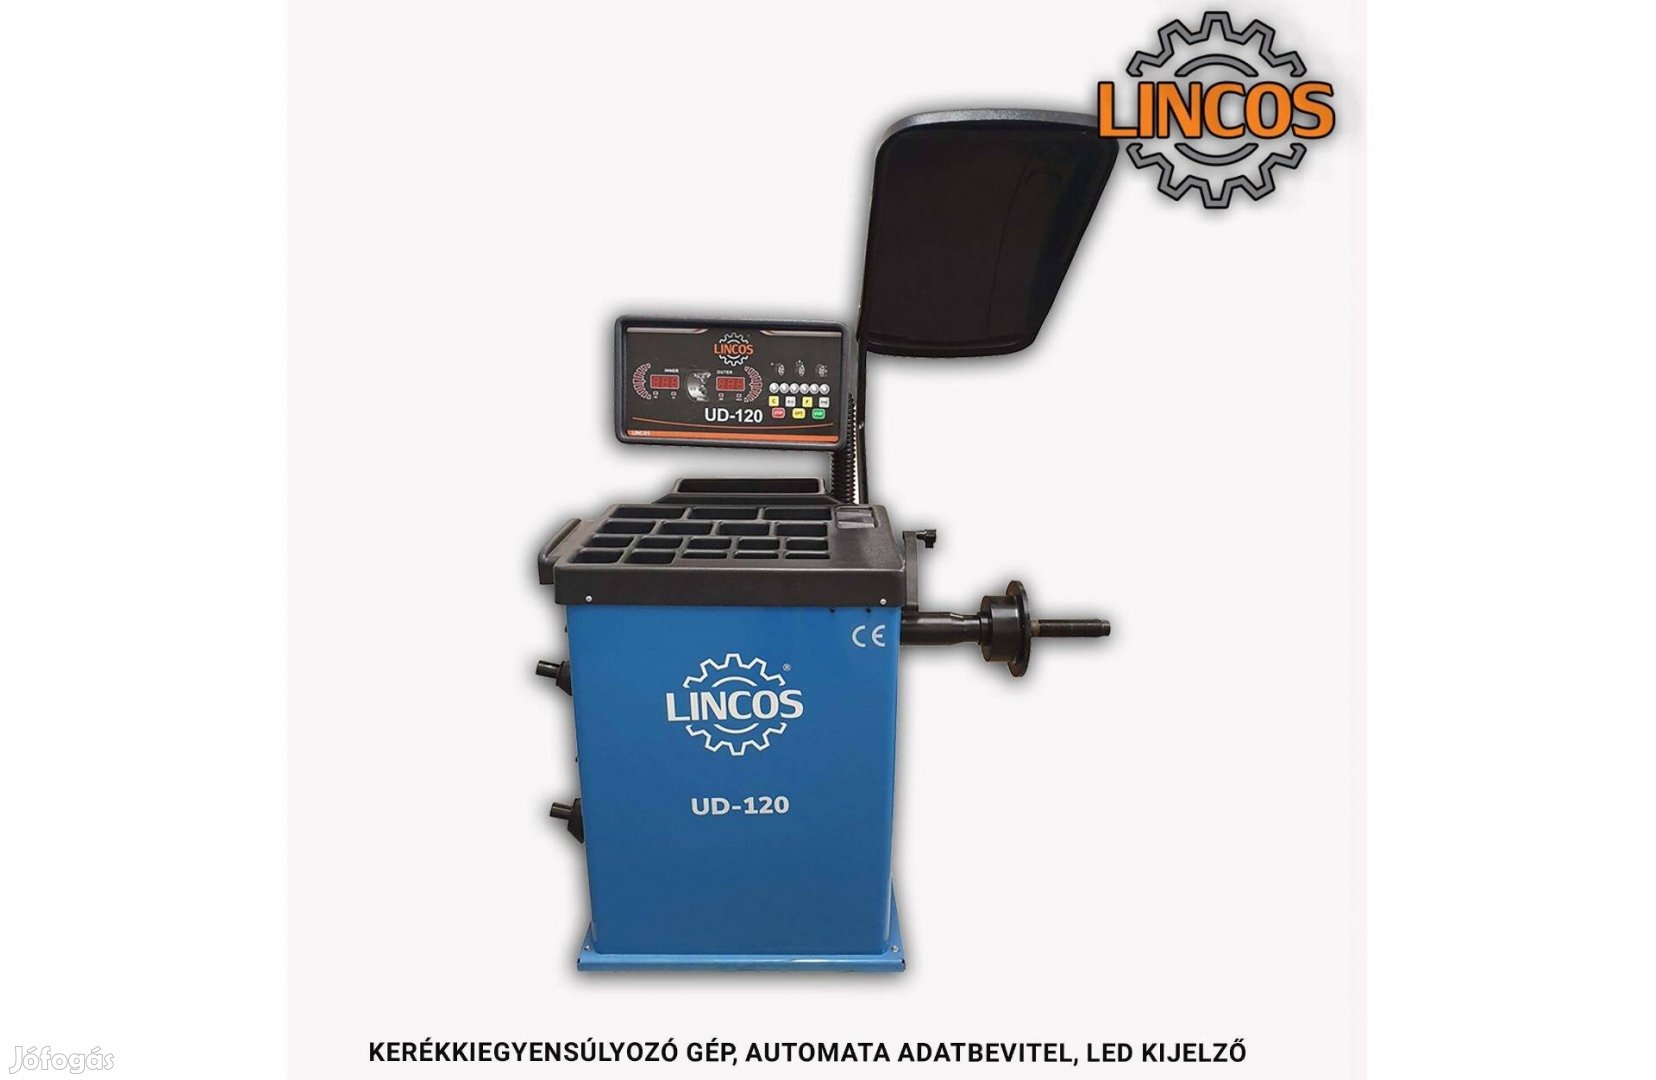 Kerékkiegyensúlyozó gép, automata adatbevitel, LED kijelző UD-120 Linc